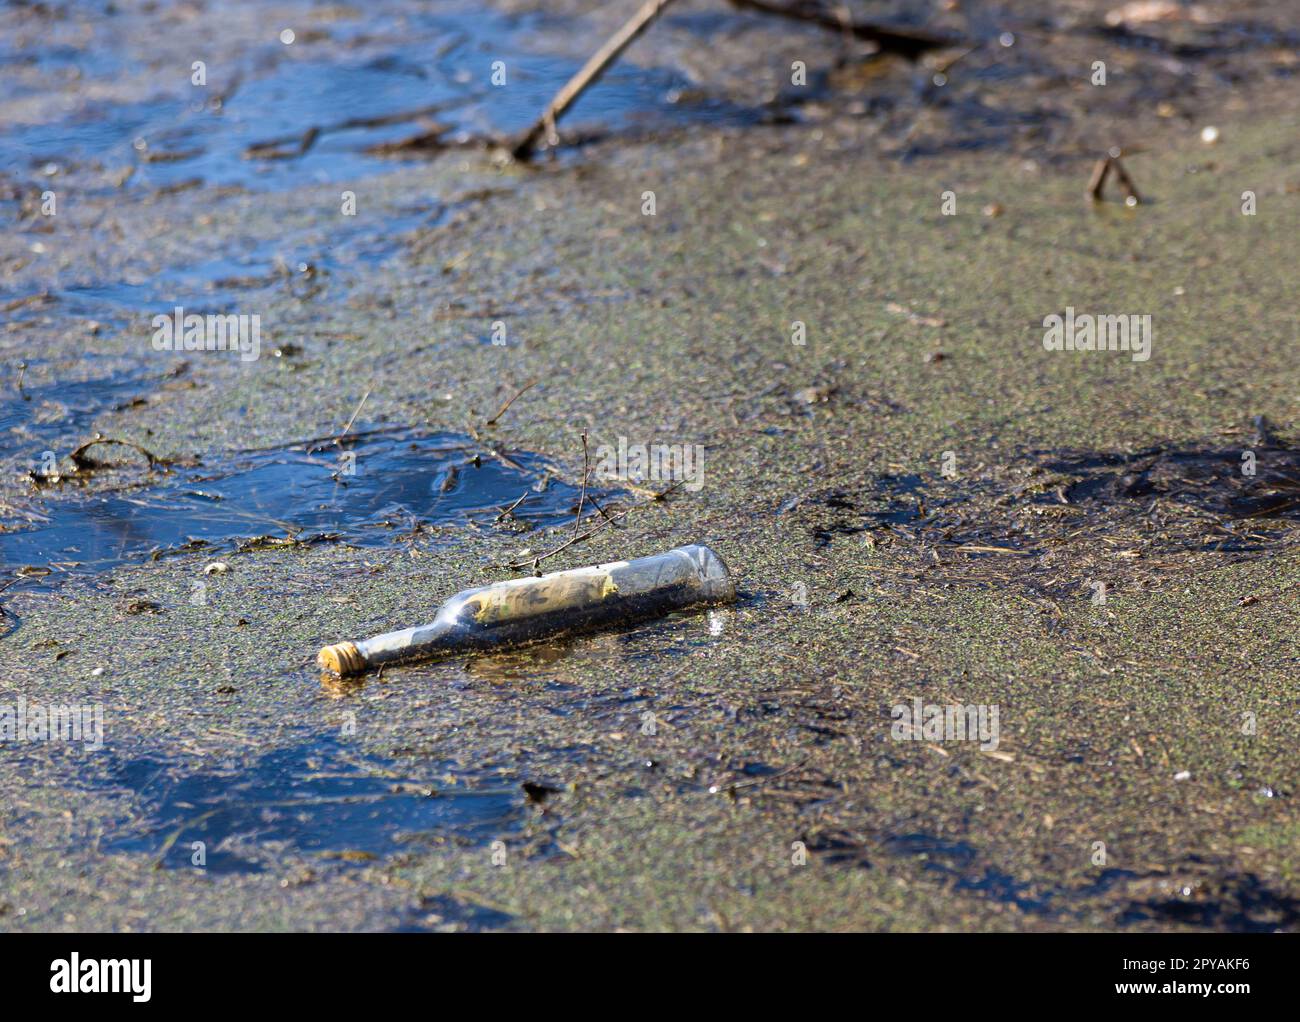 Una bottiglia di vetro in acqua fangosa nella foresta, scartata dall'uomo. Disastro ambientale in natura. Il problema della spazzatura in natura. Orizzontalmente. Foto Foto Stock